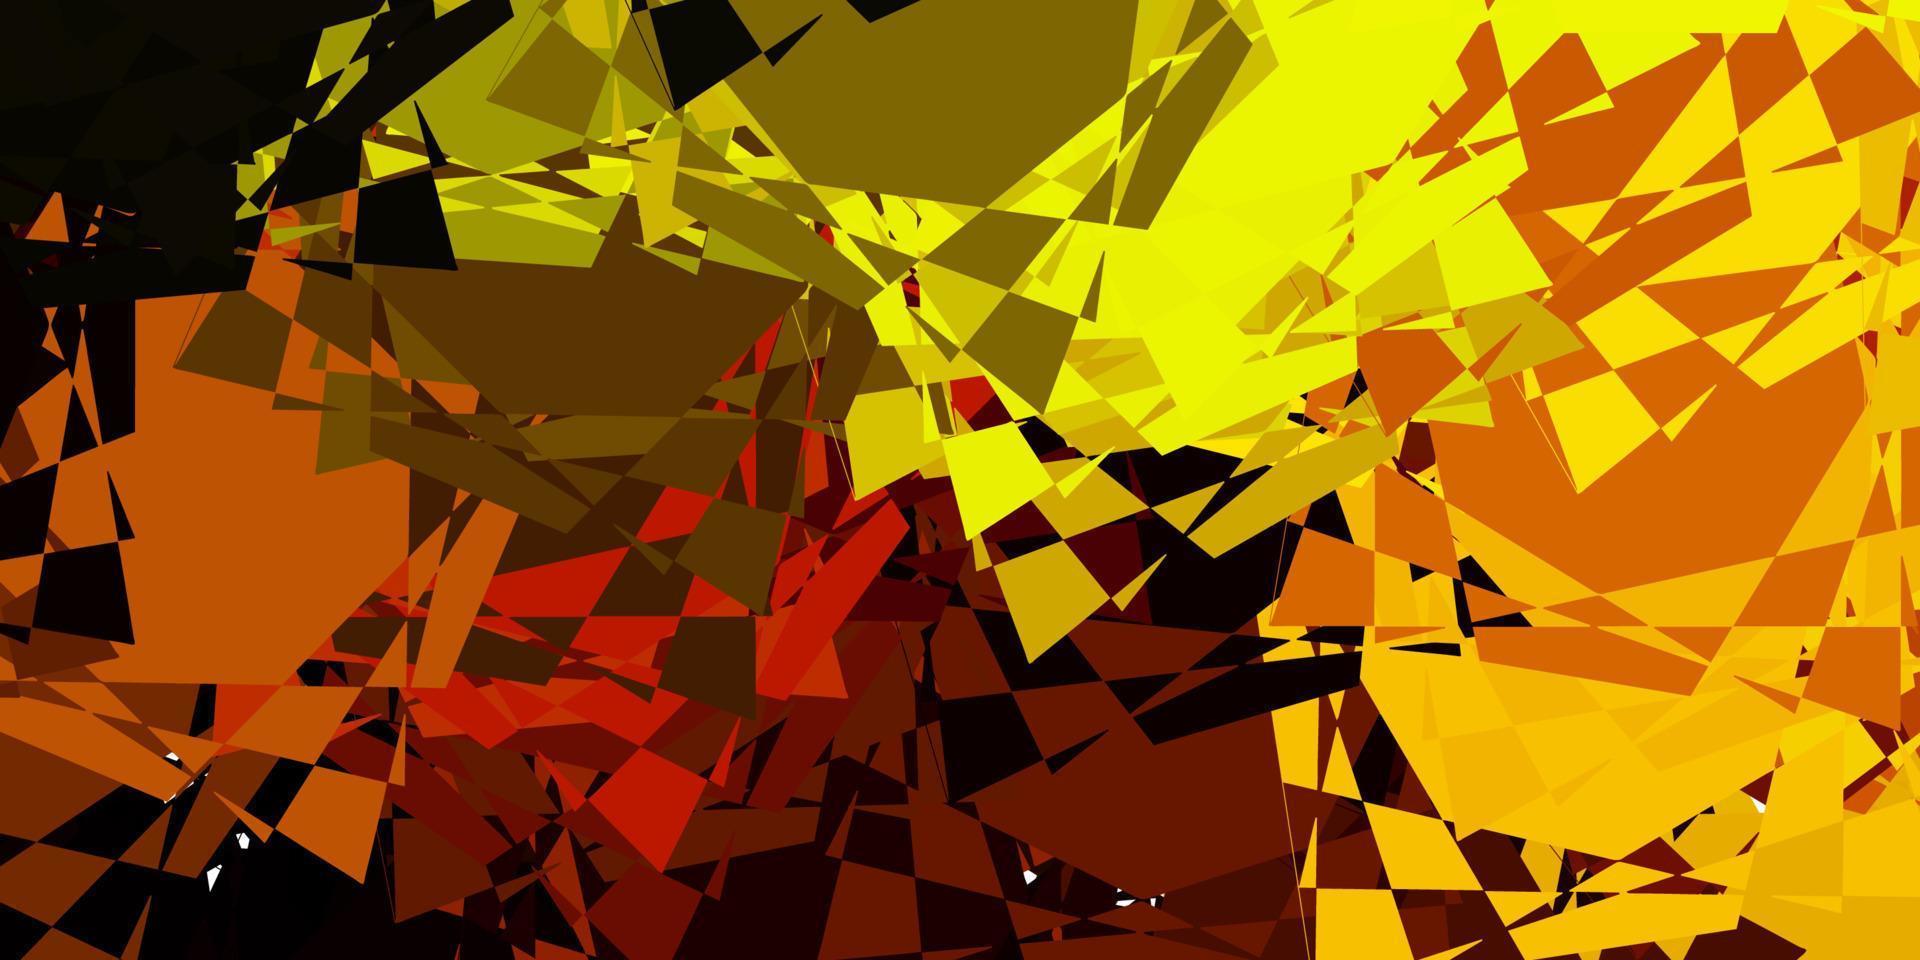 toile de fond de vecteur rouge et jaune foncé avec des triangles, des lignes.